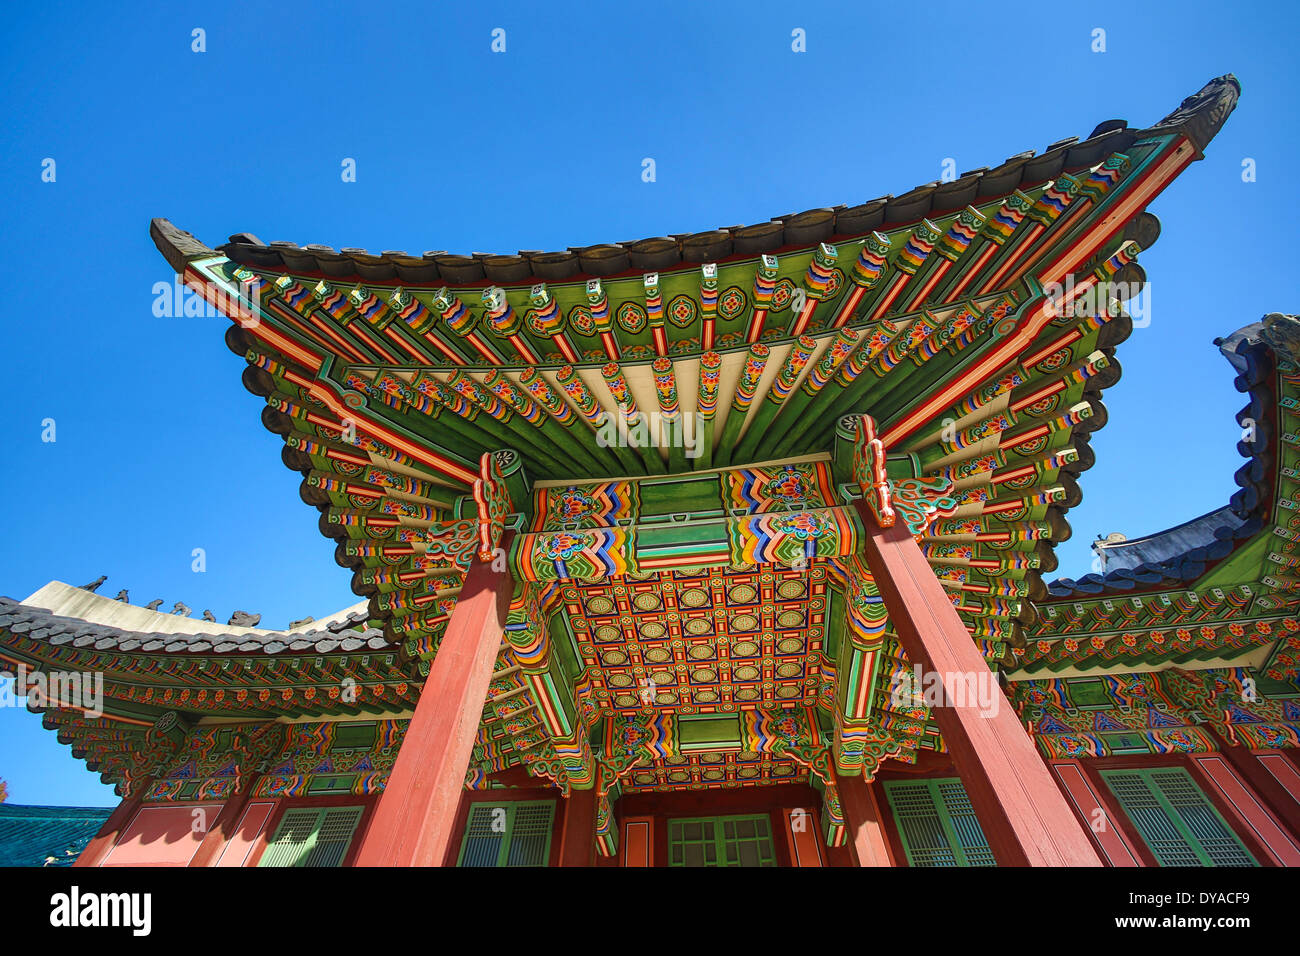 Patrimoine mondial, Gyeongbokgung, Corée, Asie, Séoul, architecture, plafond, colorées, l'histoire, le palais, touristique, les voyages, l'UNESCO Banque D'Images